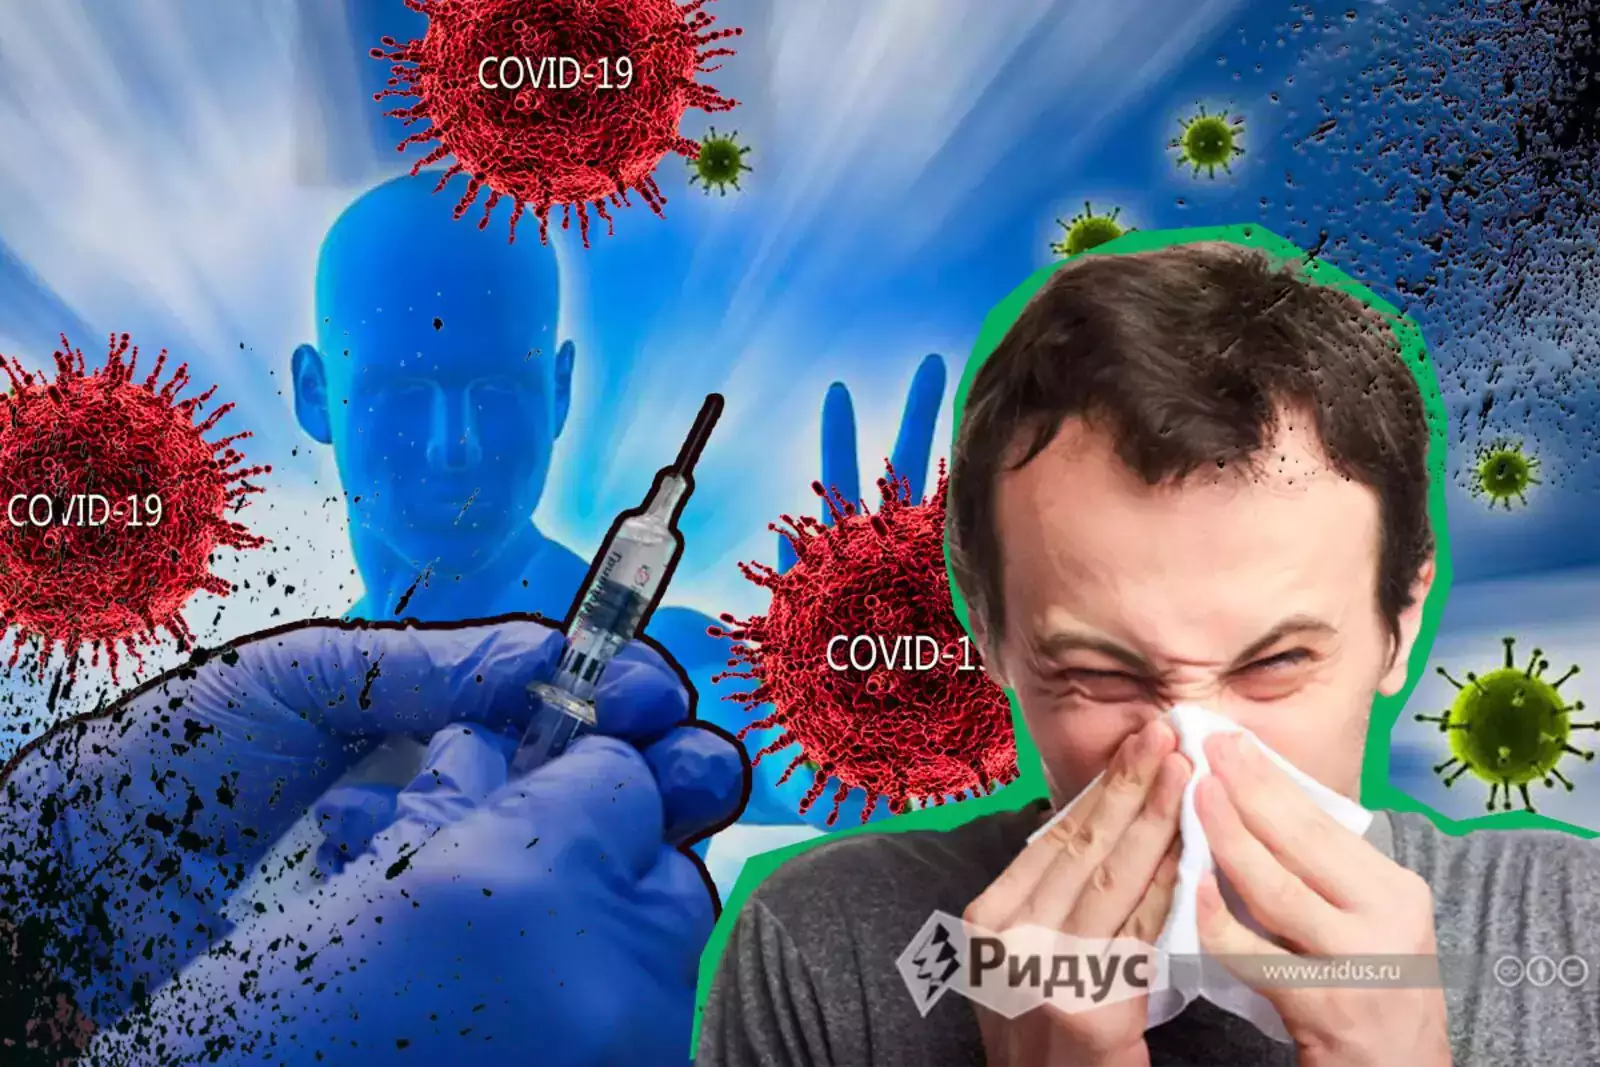 Обученный иммунитет человека достаточно силён, чтобы тяжёлое заболевание протекло в форме обычной простуды.